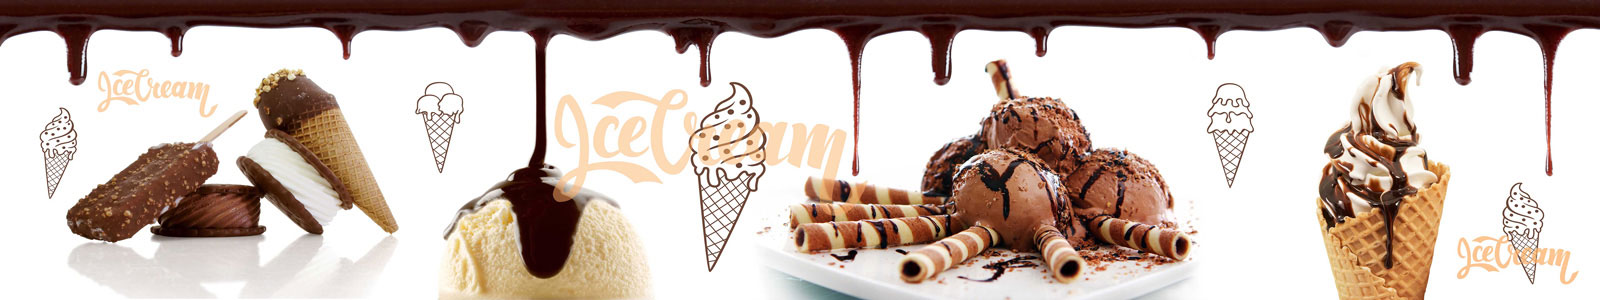 №5656 - Мороженое с шоколадом